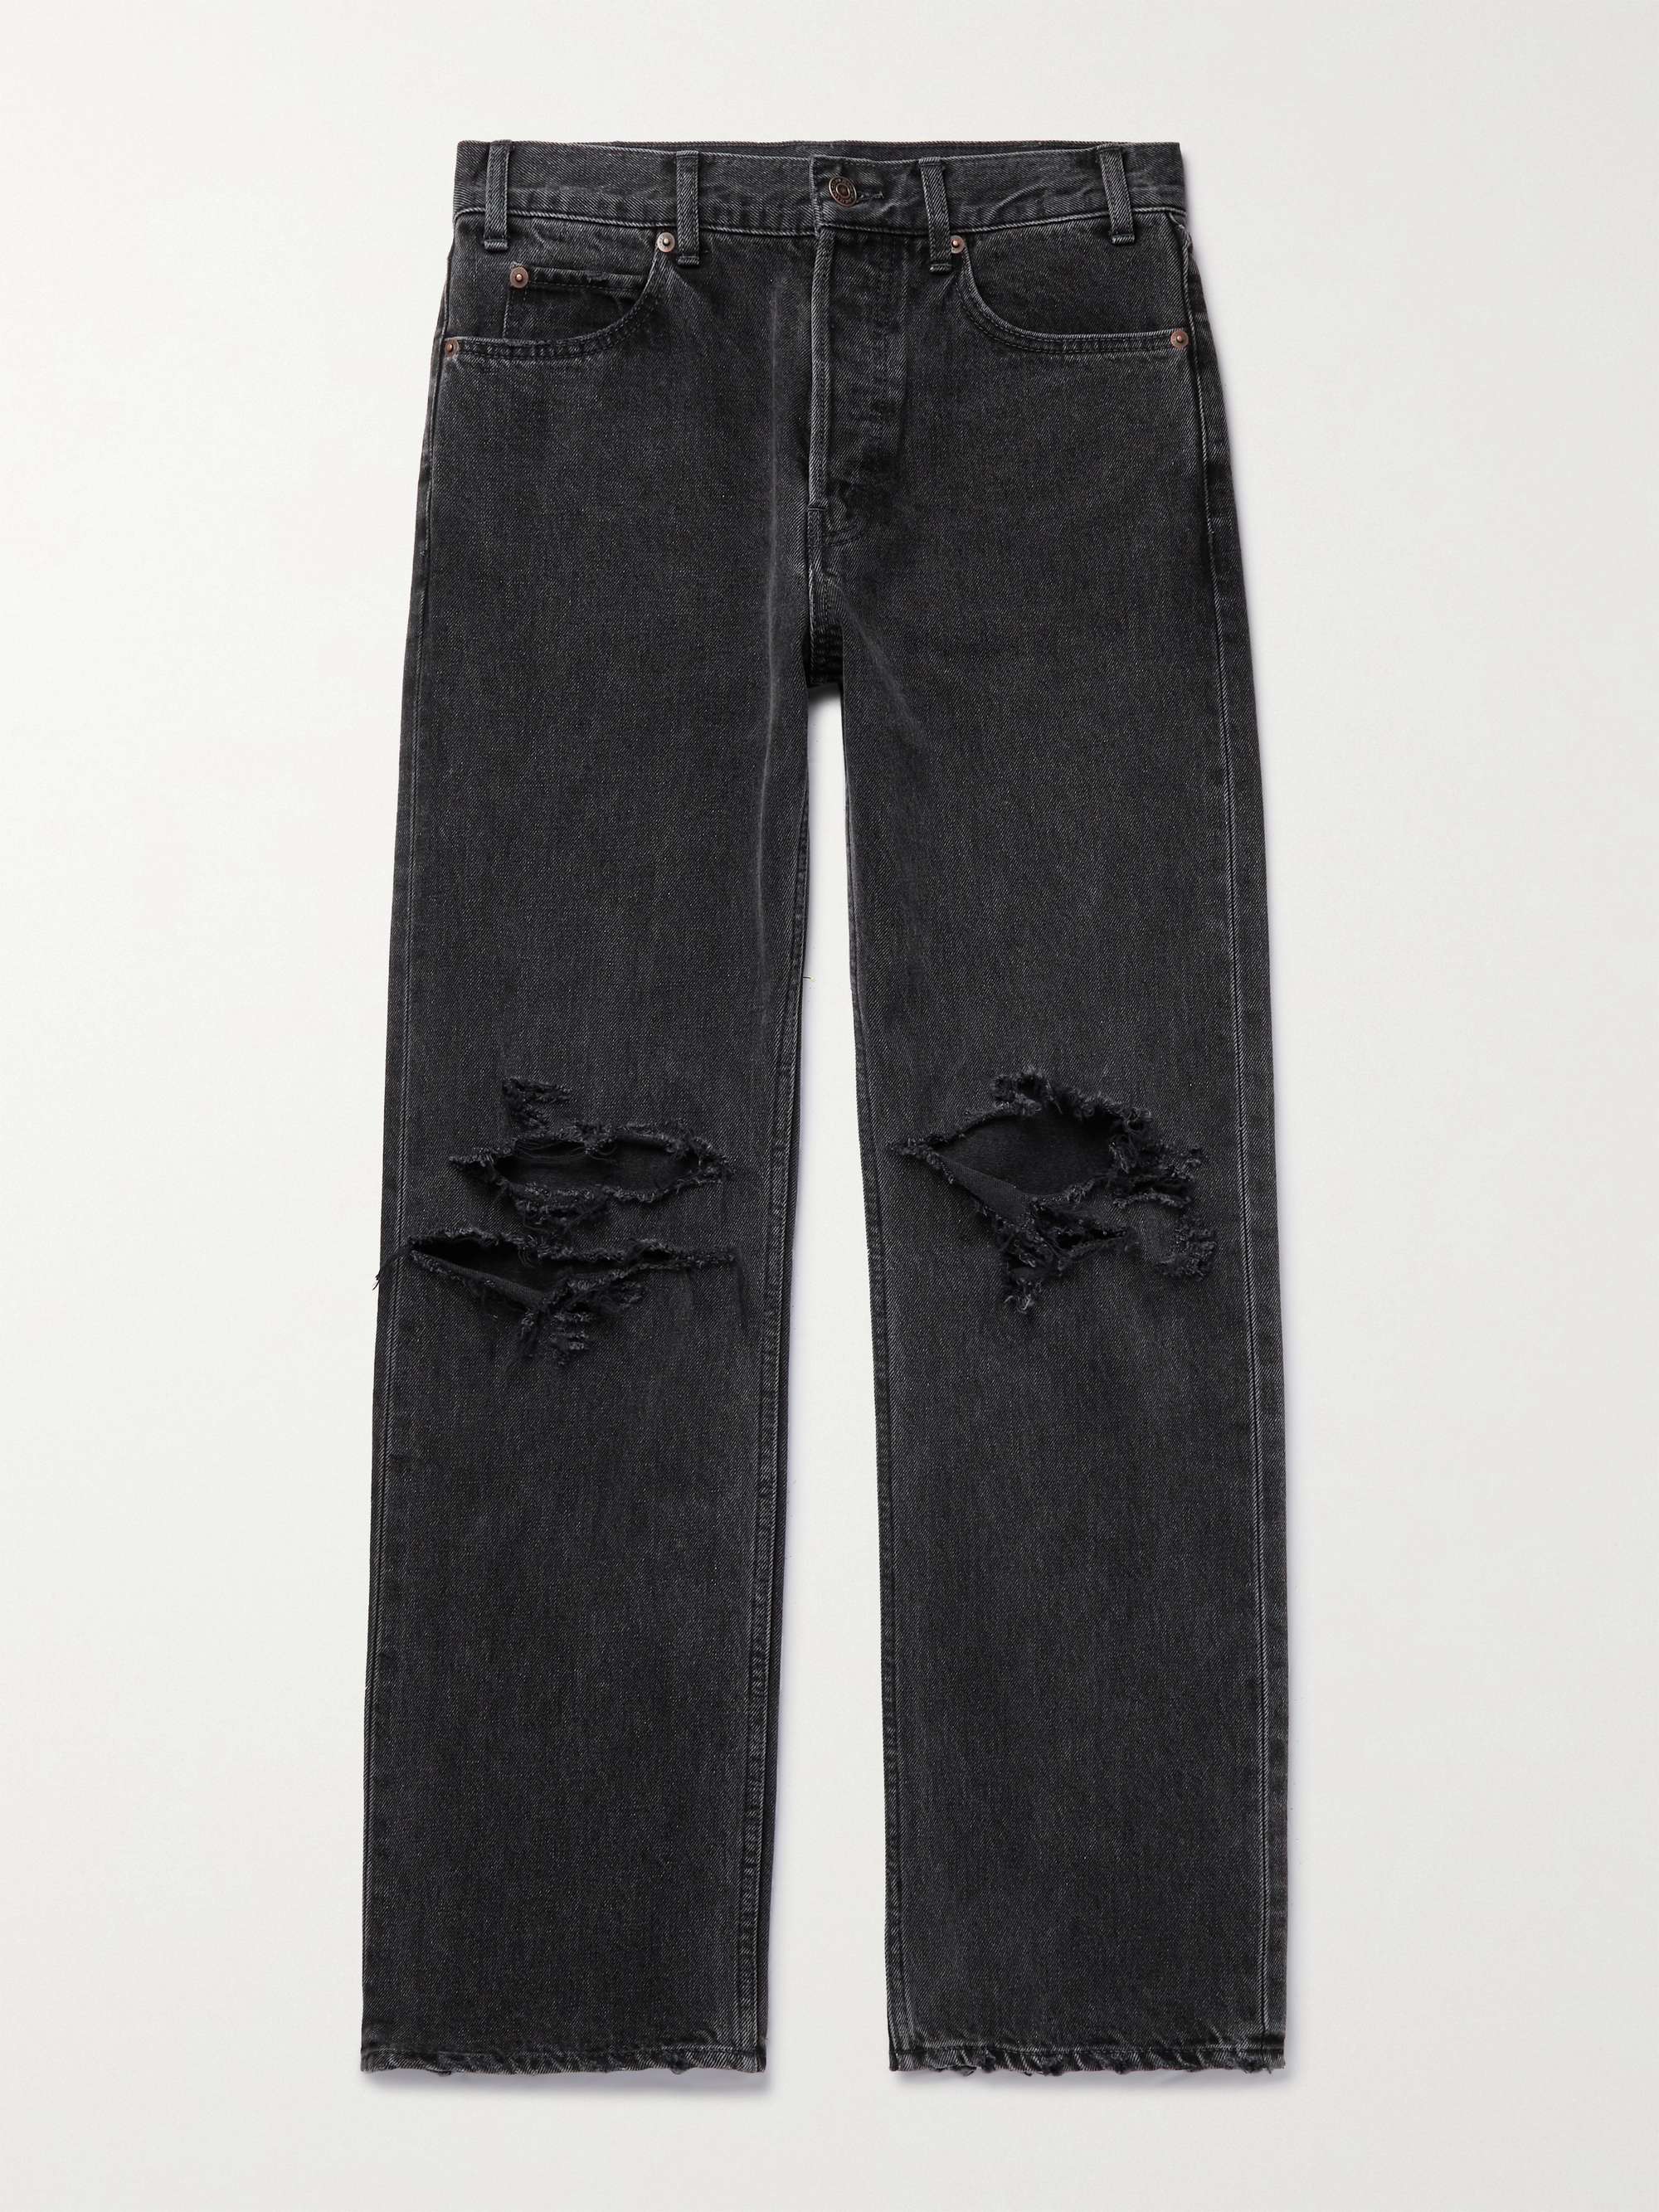 셀린느 옴므 커트 데님 진 CELINE HOMME Kurt Slim-Fit Distressed Denim Jeans,Black